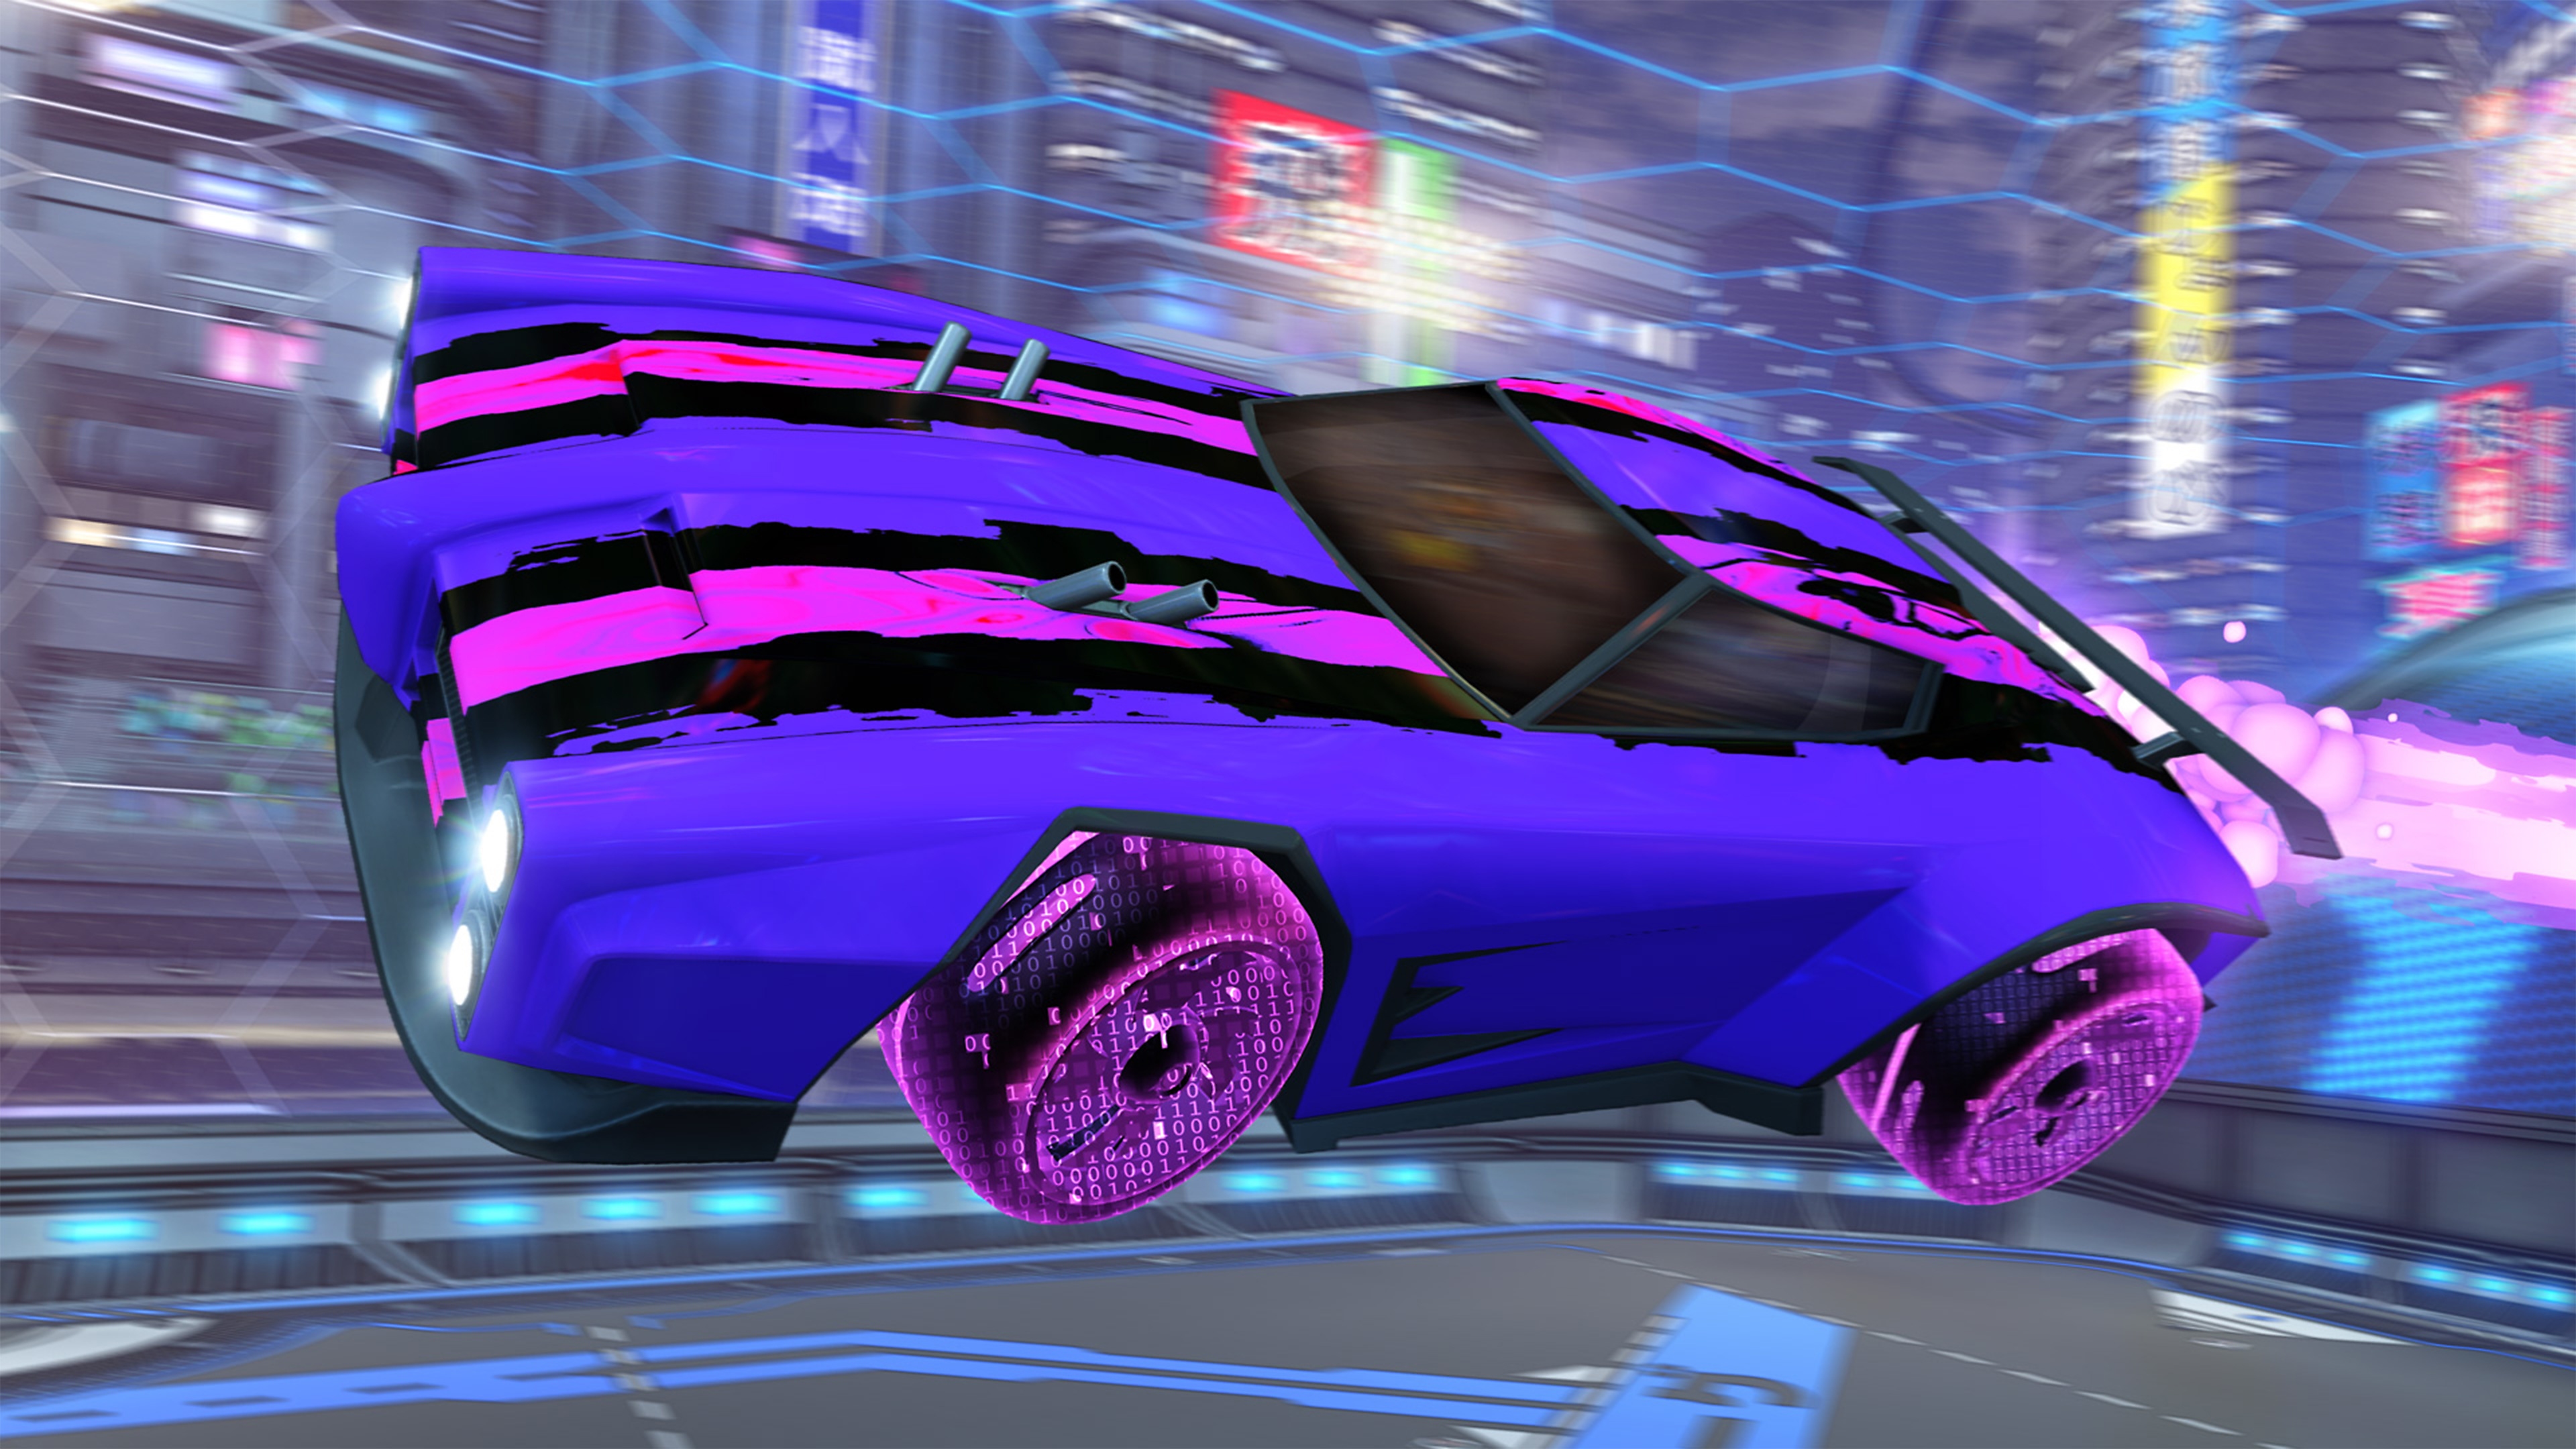 Rocket League - captura de tela mostrando carro roxo com faixas de corrida rosa e preta